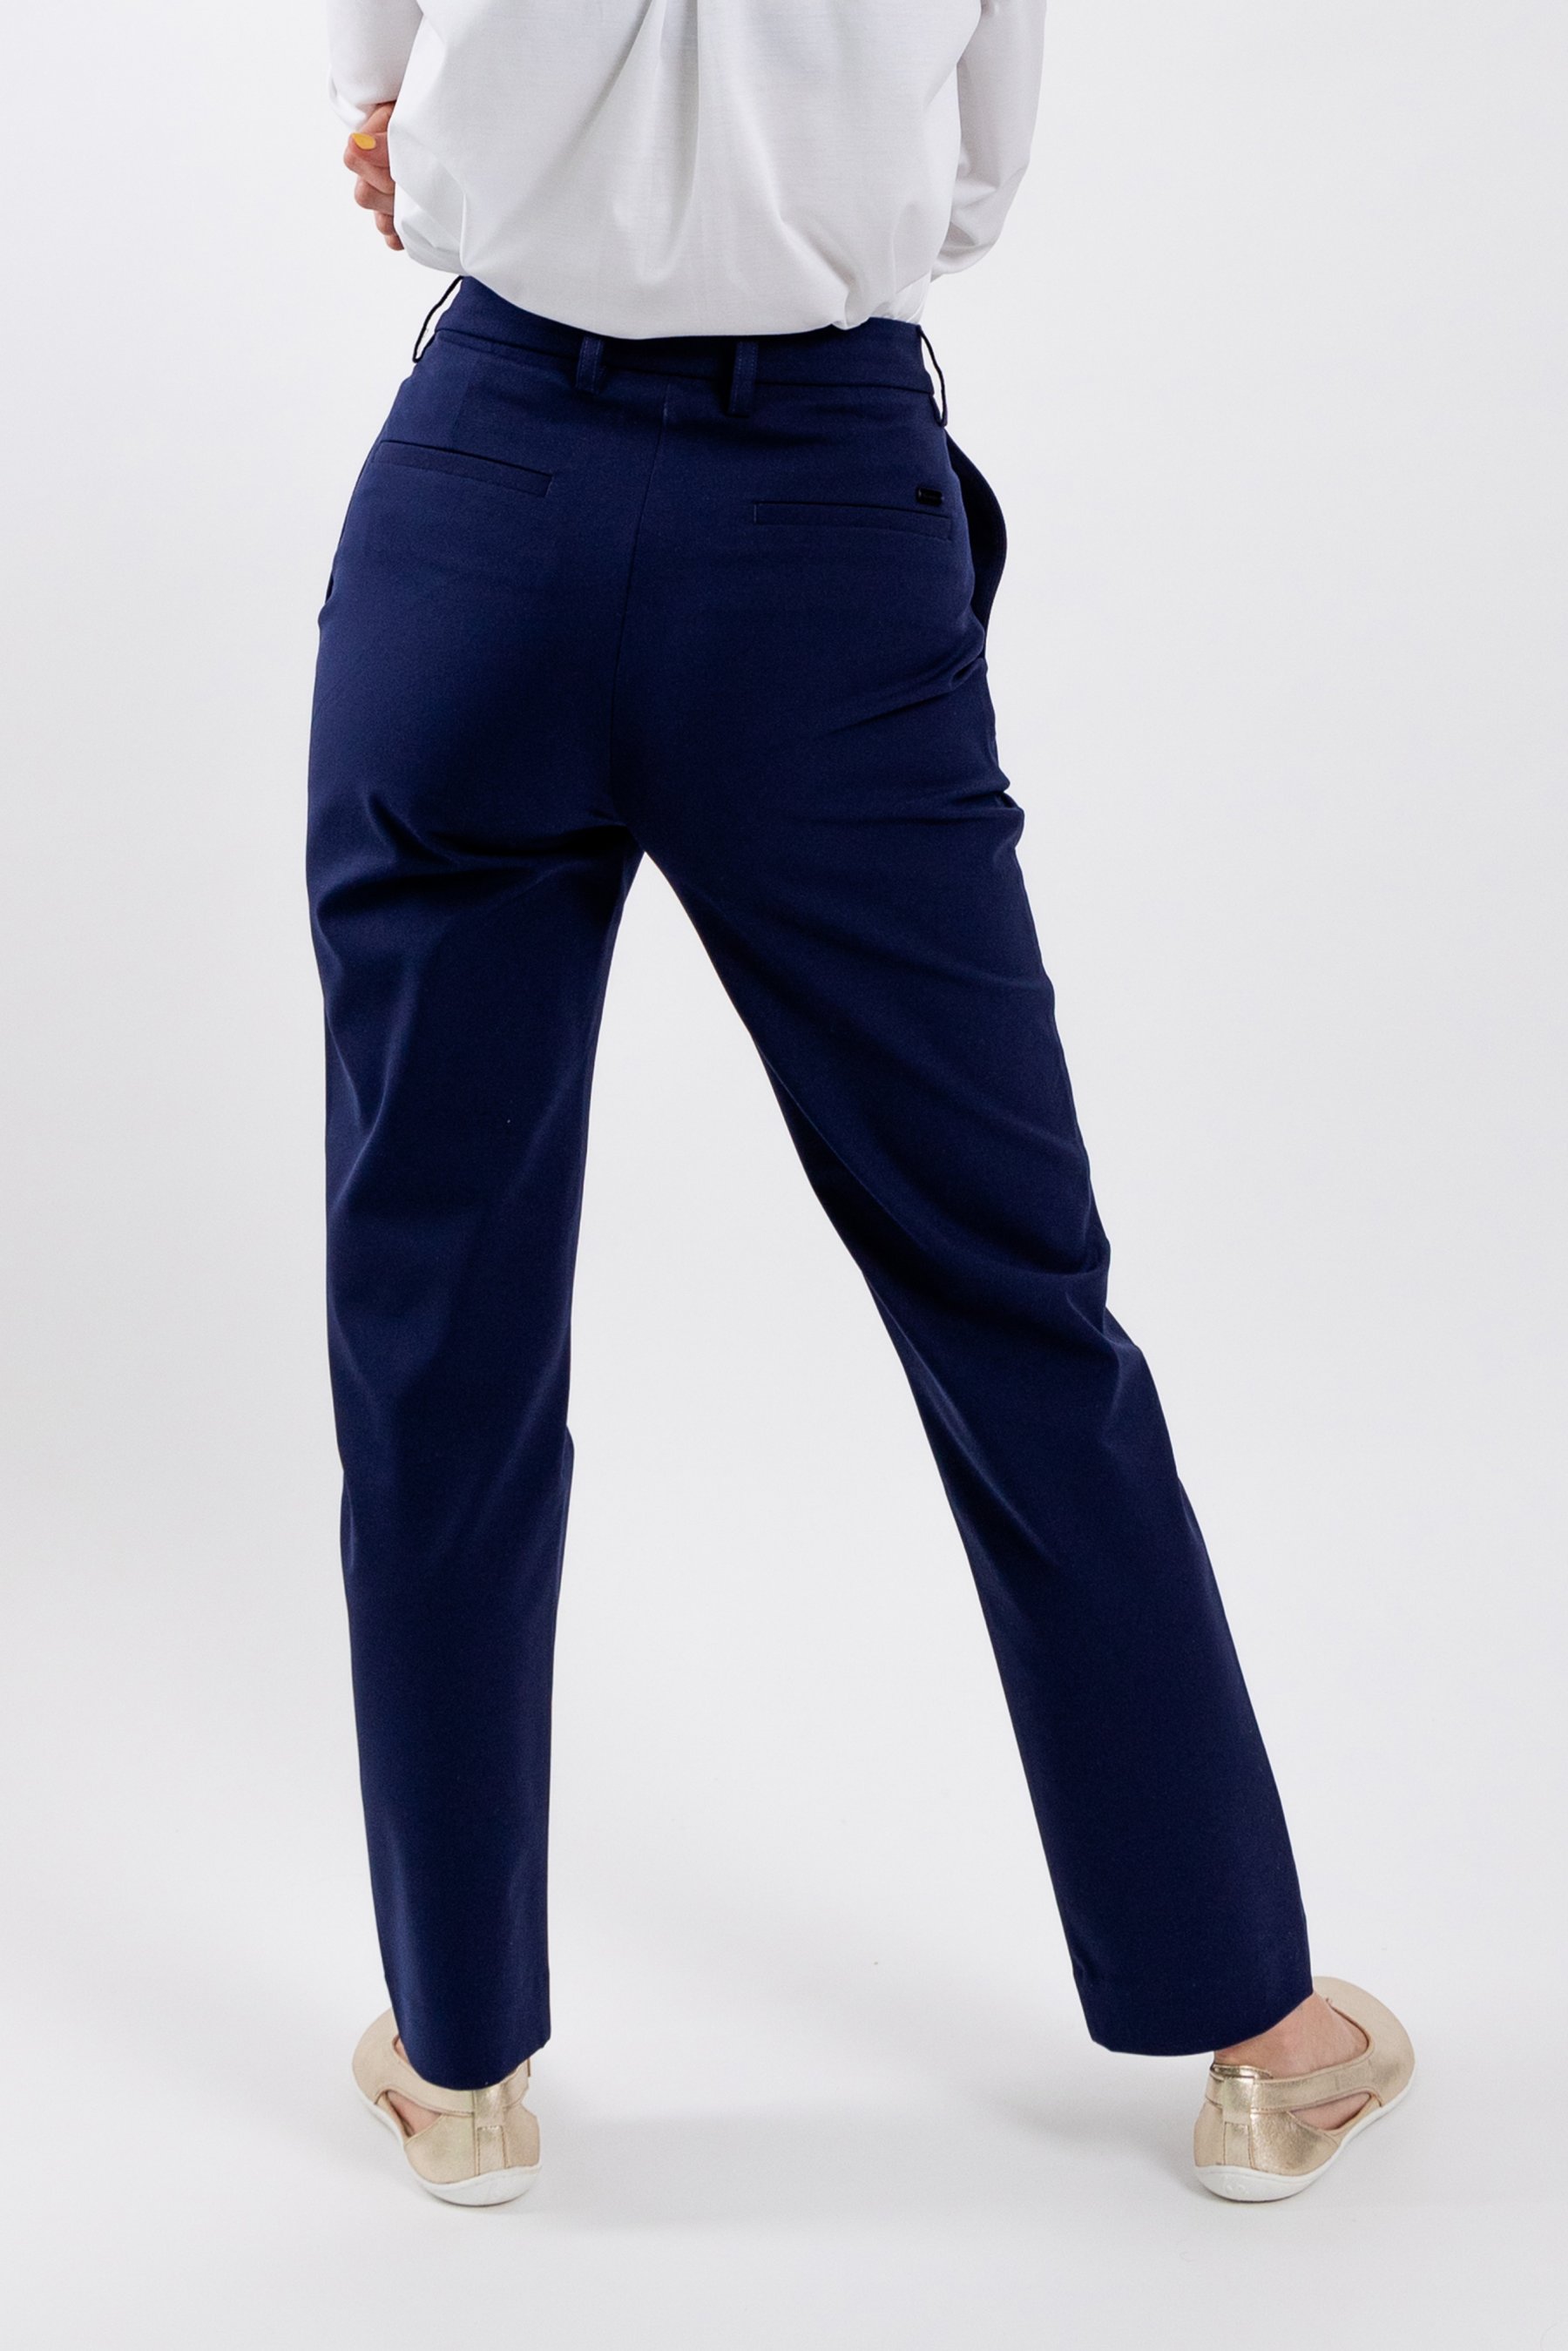 STEFANEL Navy Blue Dress Pants Trousers Size EU 38 40 UK 8 10 US 6 8